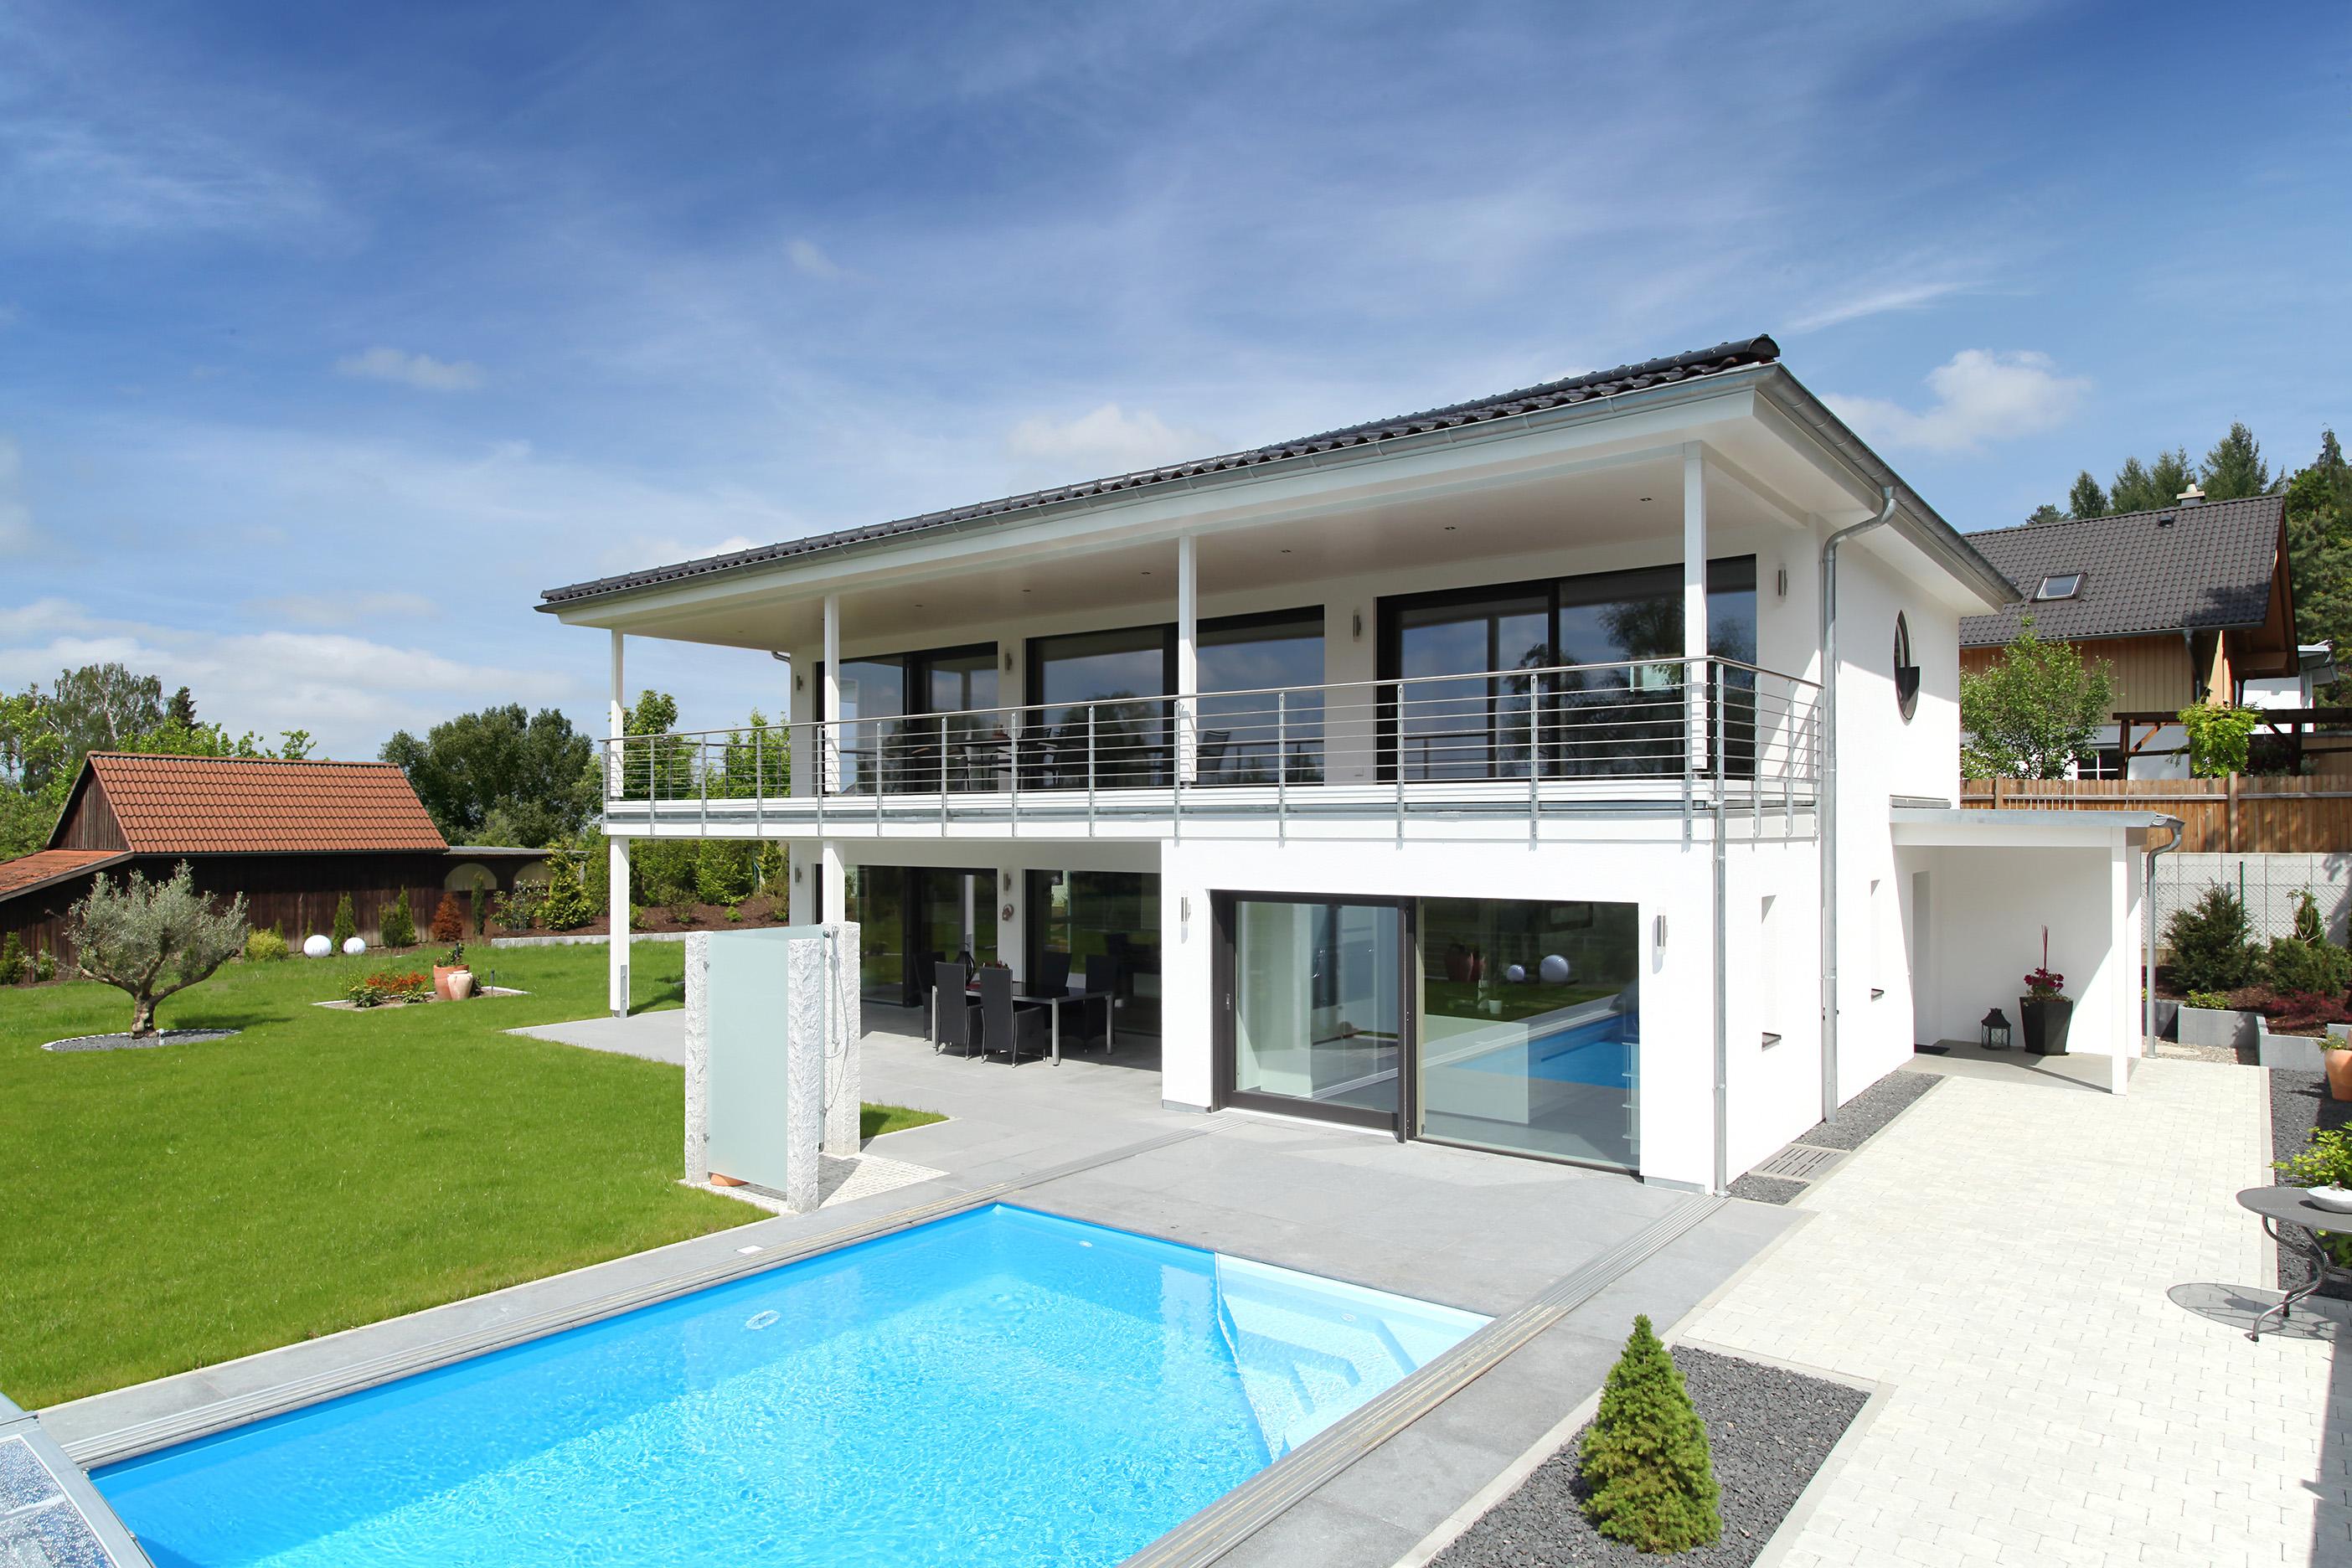 Haus Riederle #pool #terrasse #dachterrasse #designhaus #flachdach ©Baufritz GmbH & Co. KG